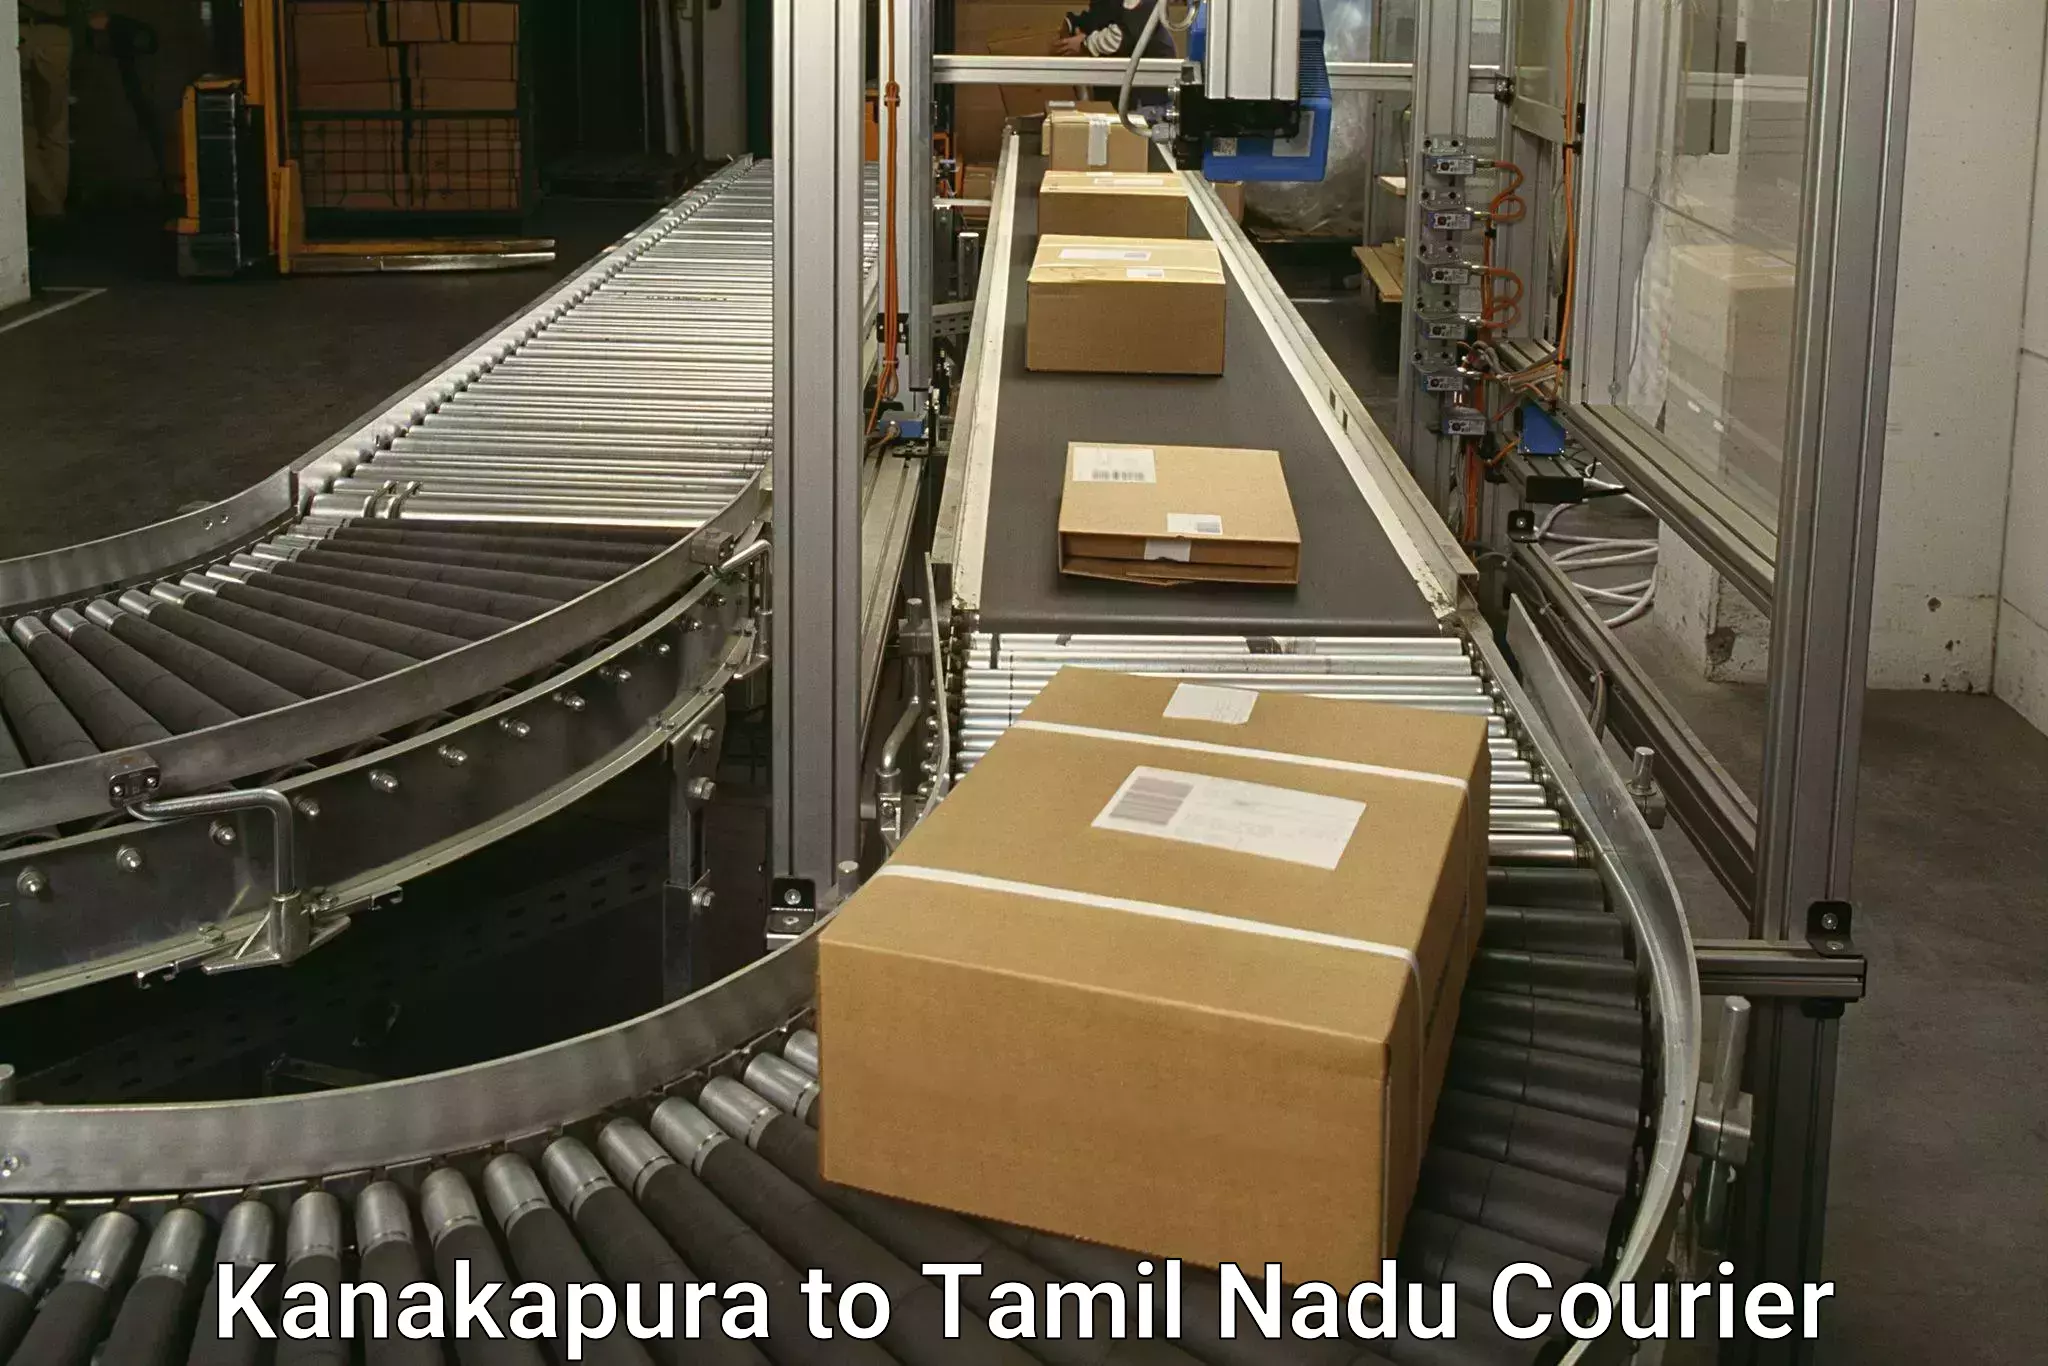 Express delivery network in Kanakapura to Madukkarai